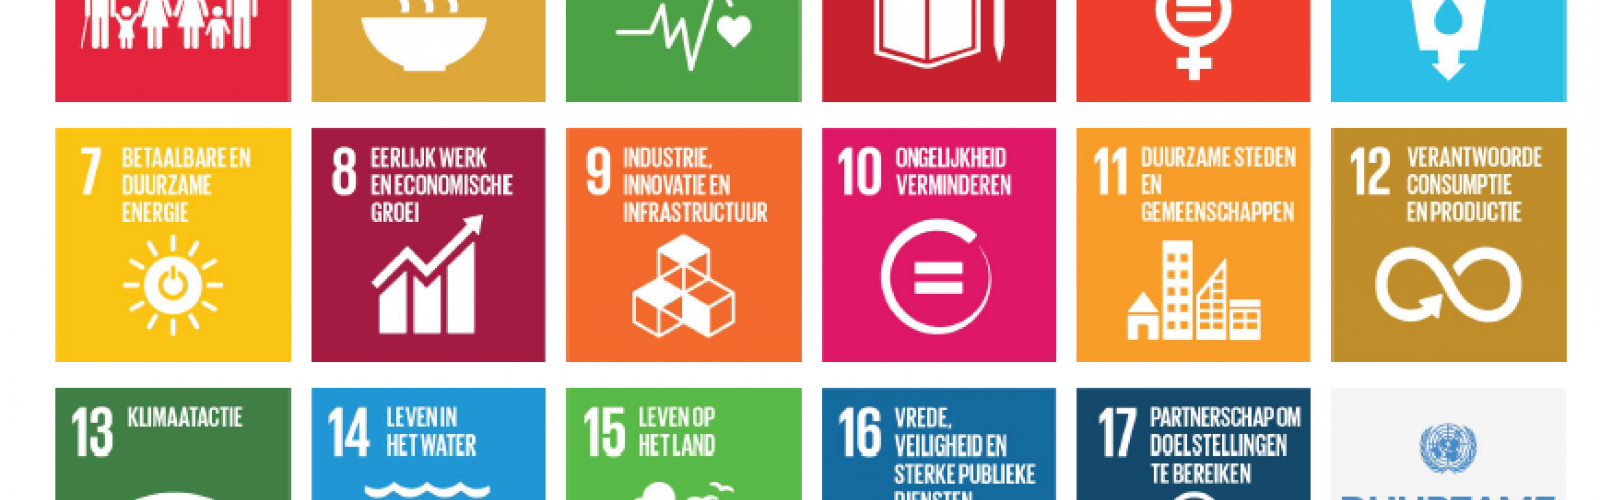 pictogrammen van 17 doelstellingen voor duurzame ontwikkeling